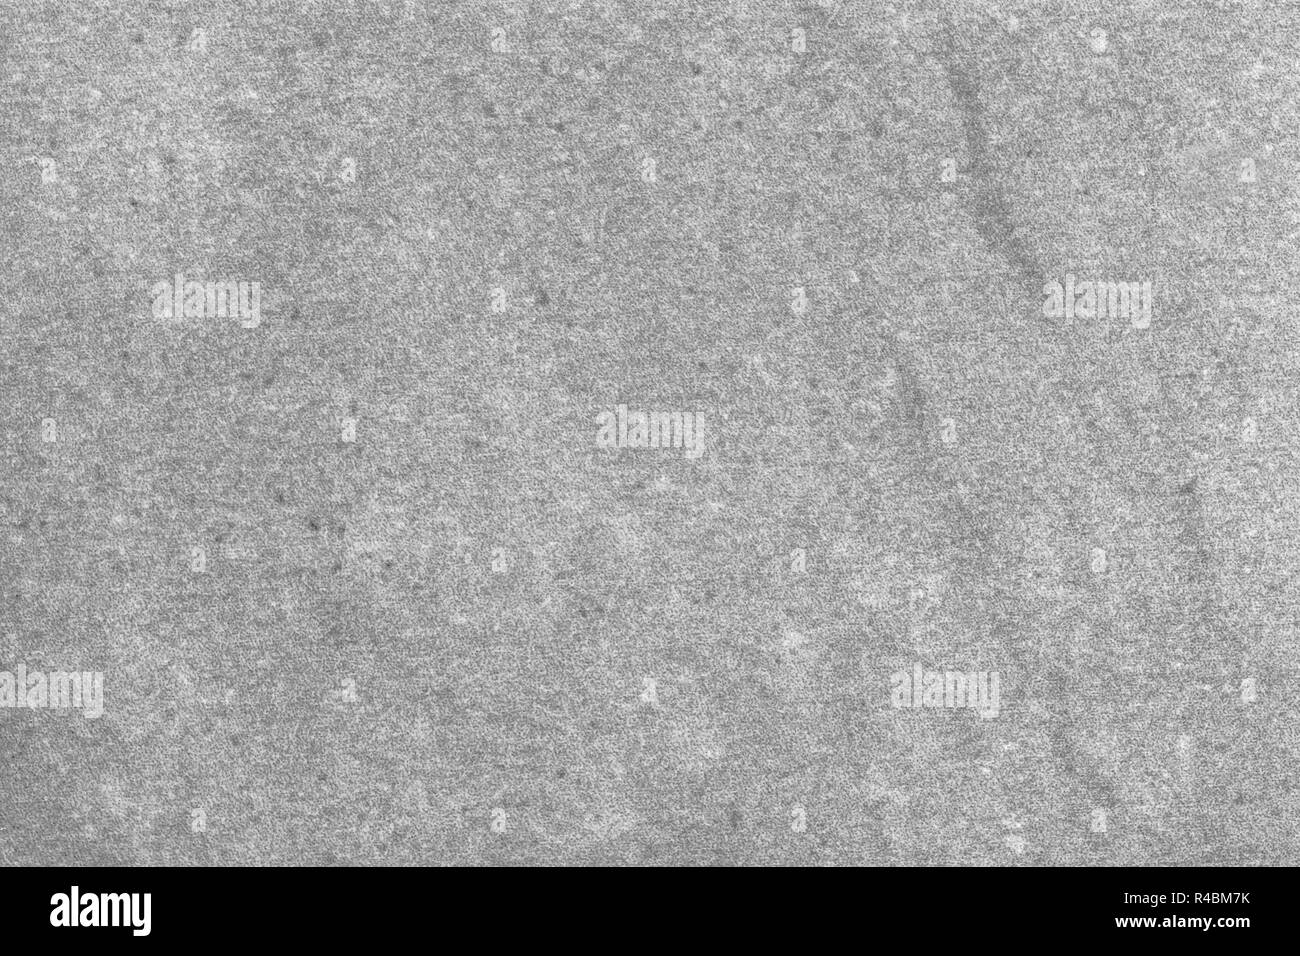 Empty Stone Background Grey Concrete Floor Texture Stock Photo Alamy